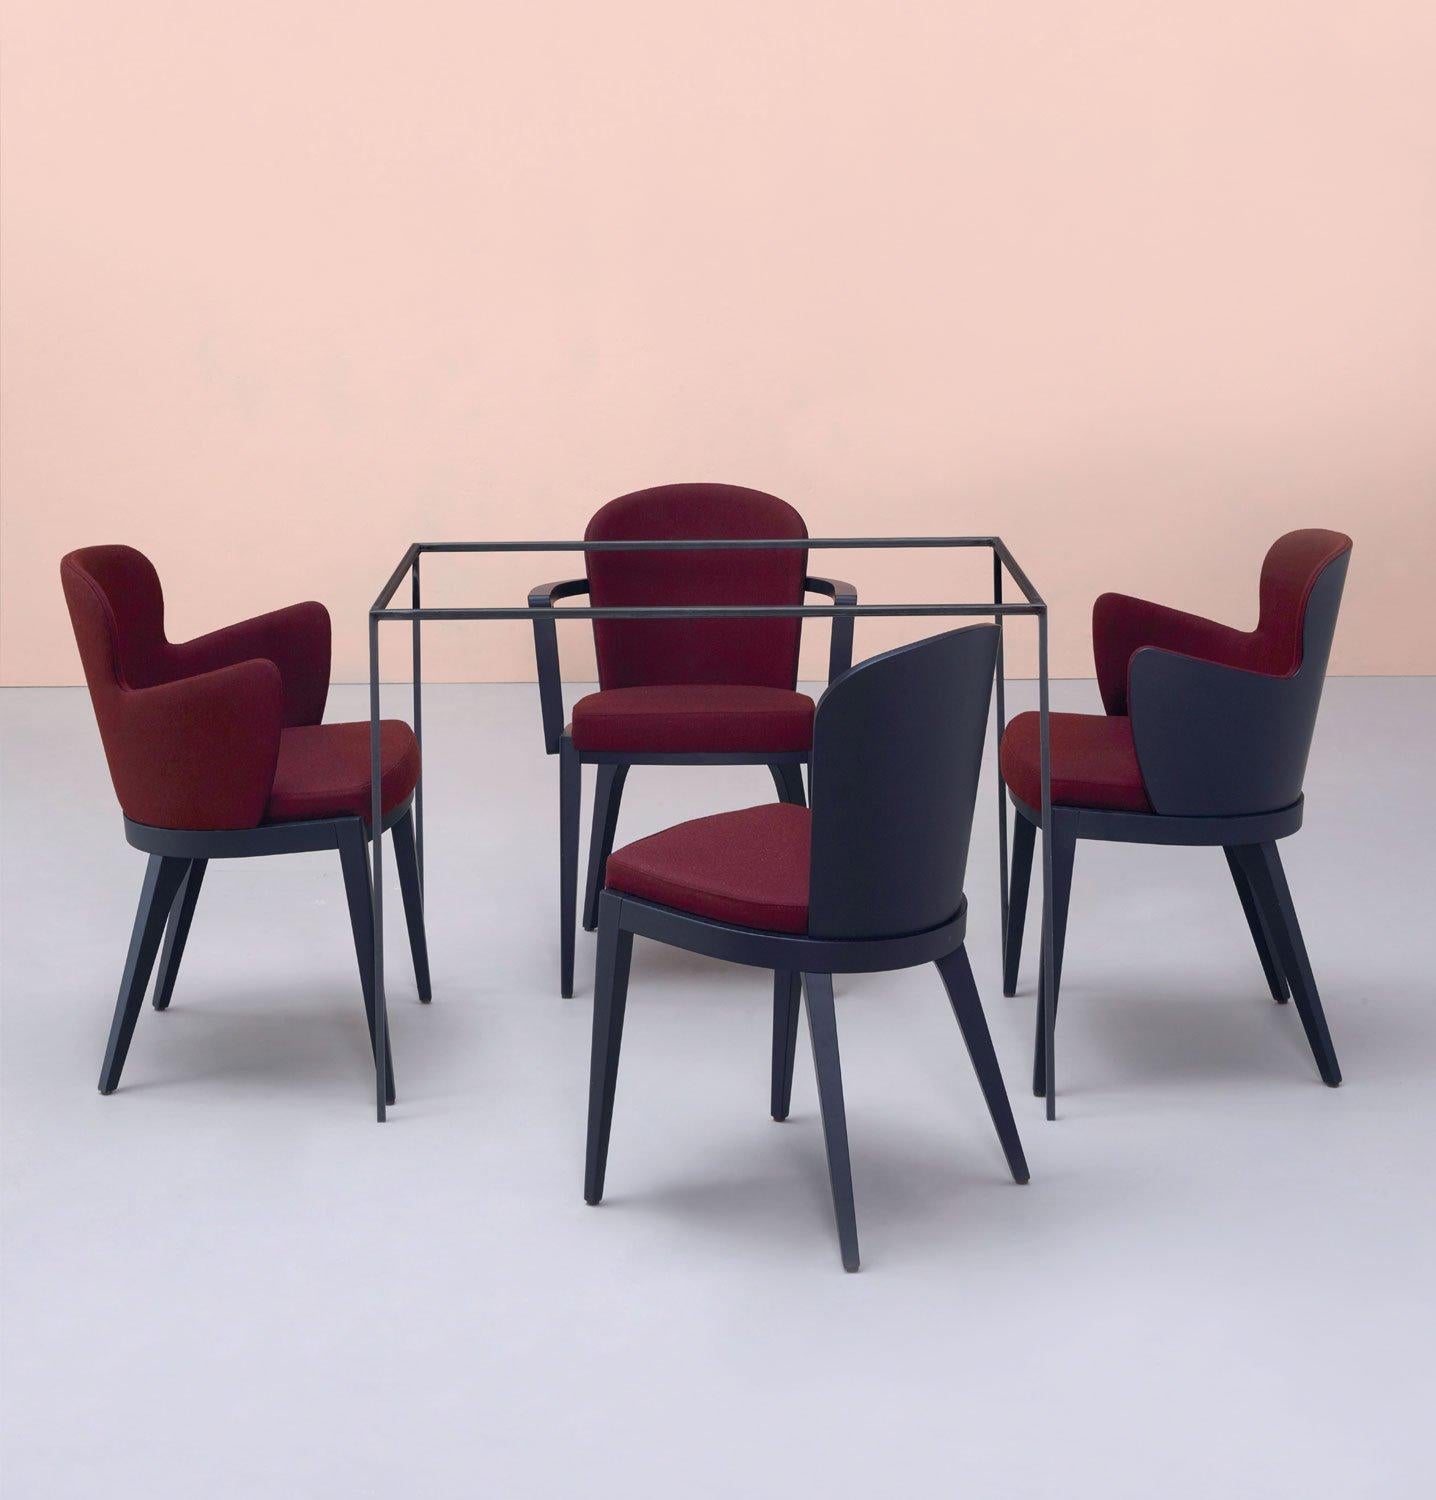 Un design intemporel associé à des techniques de couture artisanales. Les chaises de salle à manger italiennes sont dotées d'un dossier incurvé en bois rembourré pour un meilleur soutien et un plus grand confort. Elles sont proposées avec un cadre à